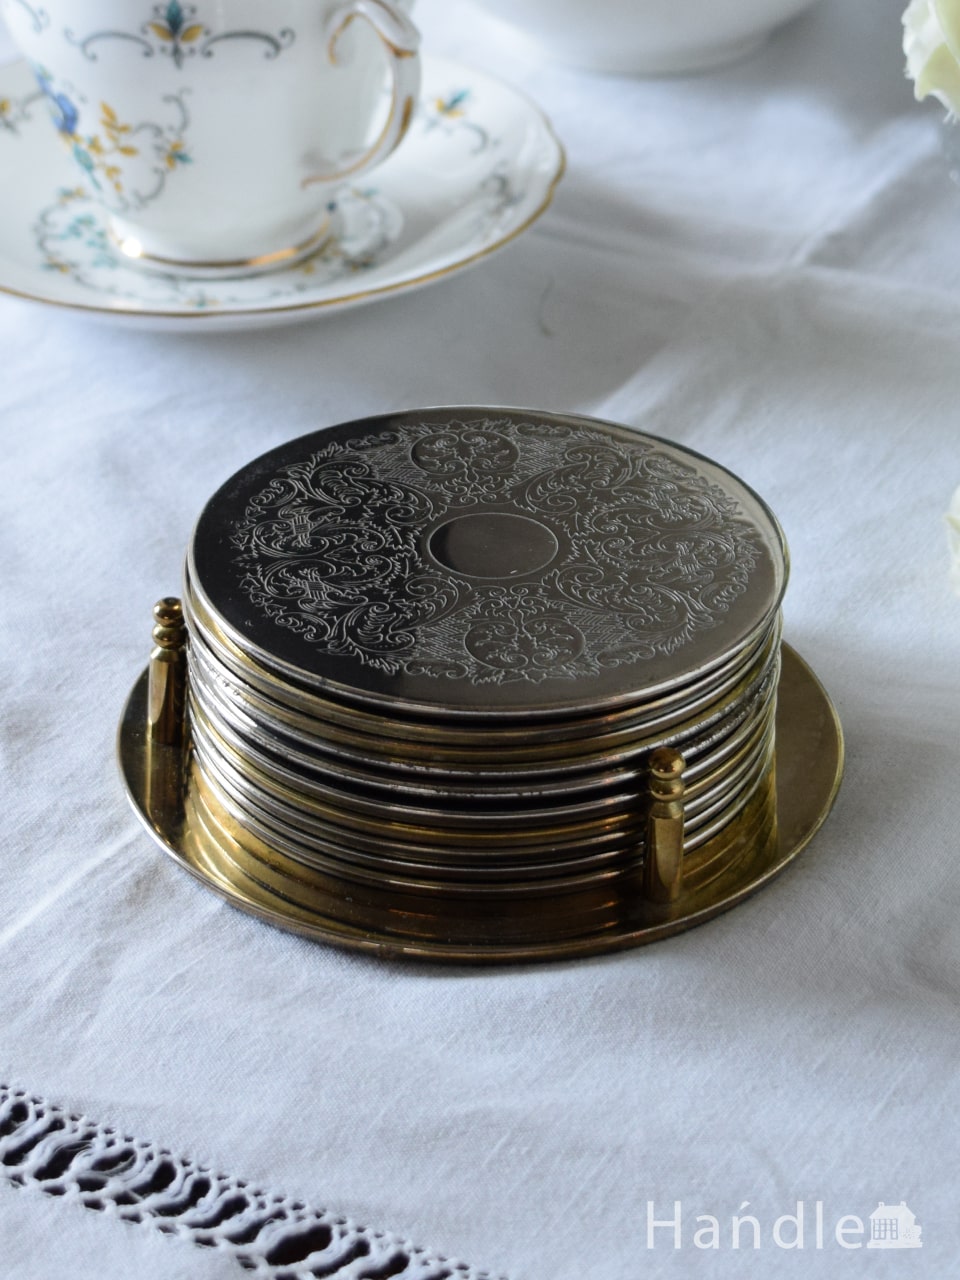 イギリスアンティークのテーブルウェア、繊細な模様が美しいコースター10枚セット (k-5019-z)